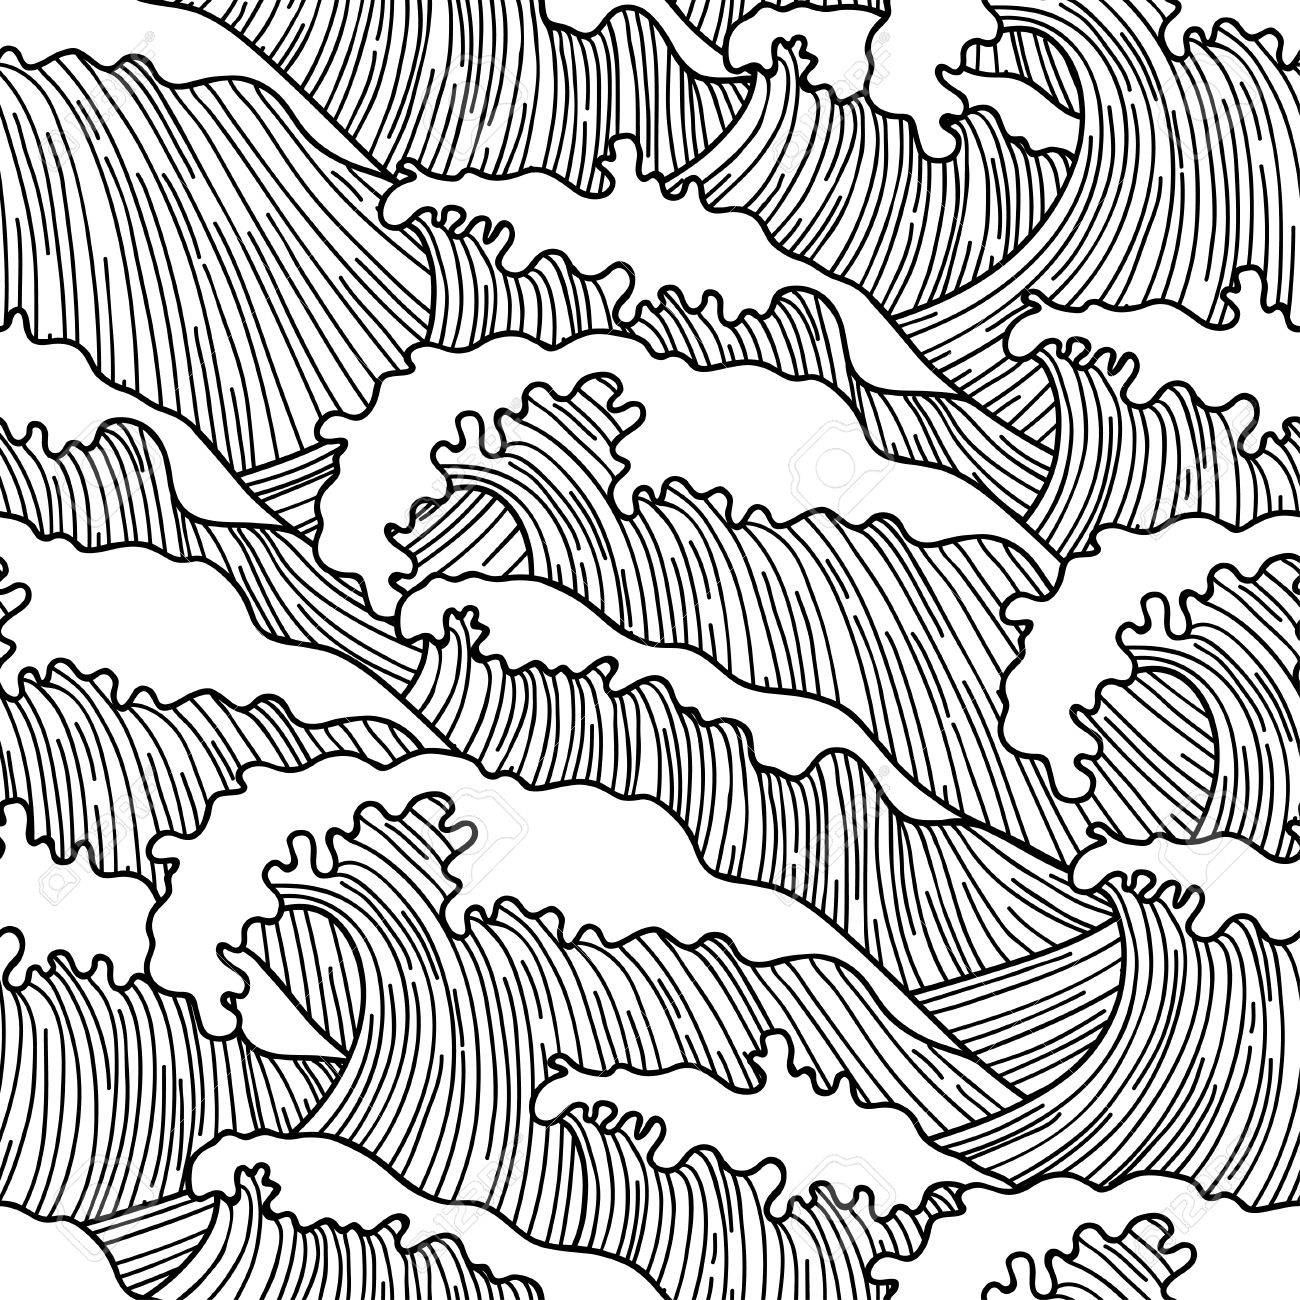 Ocean Waves Drawing Realistic Sketch